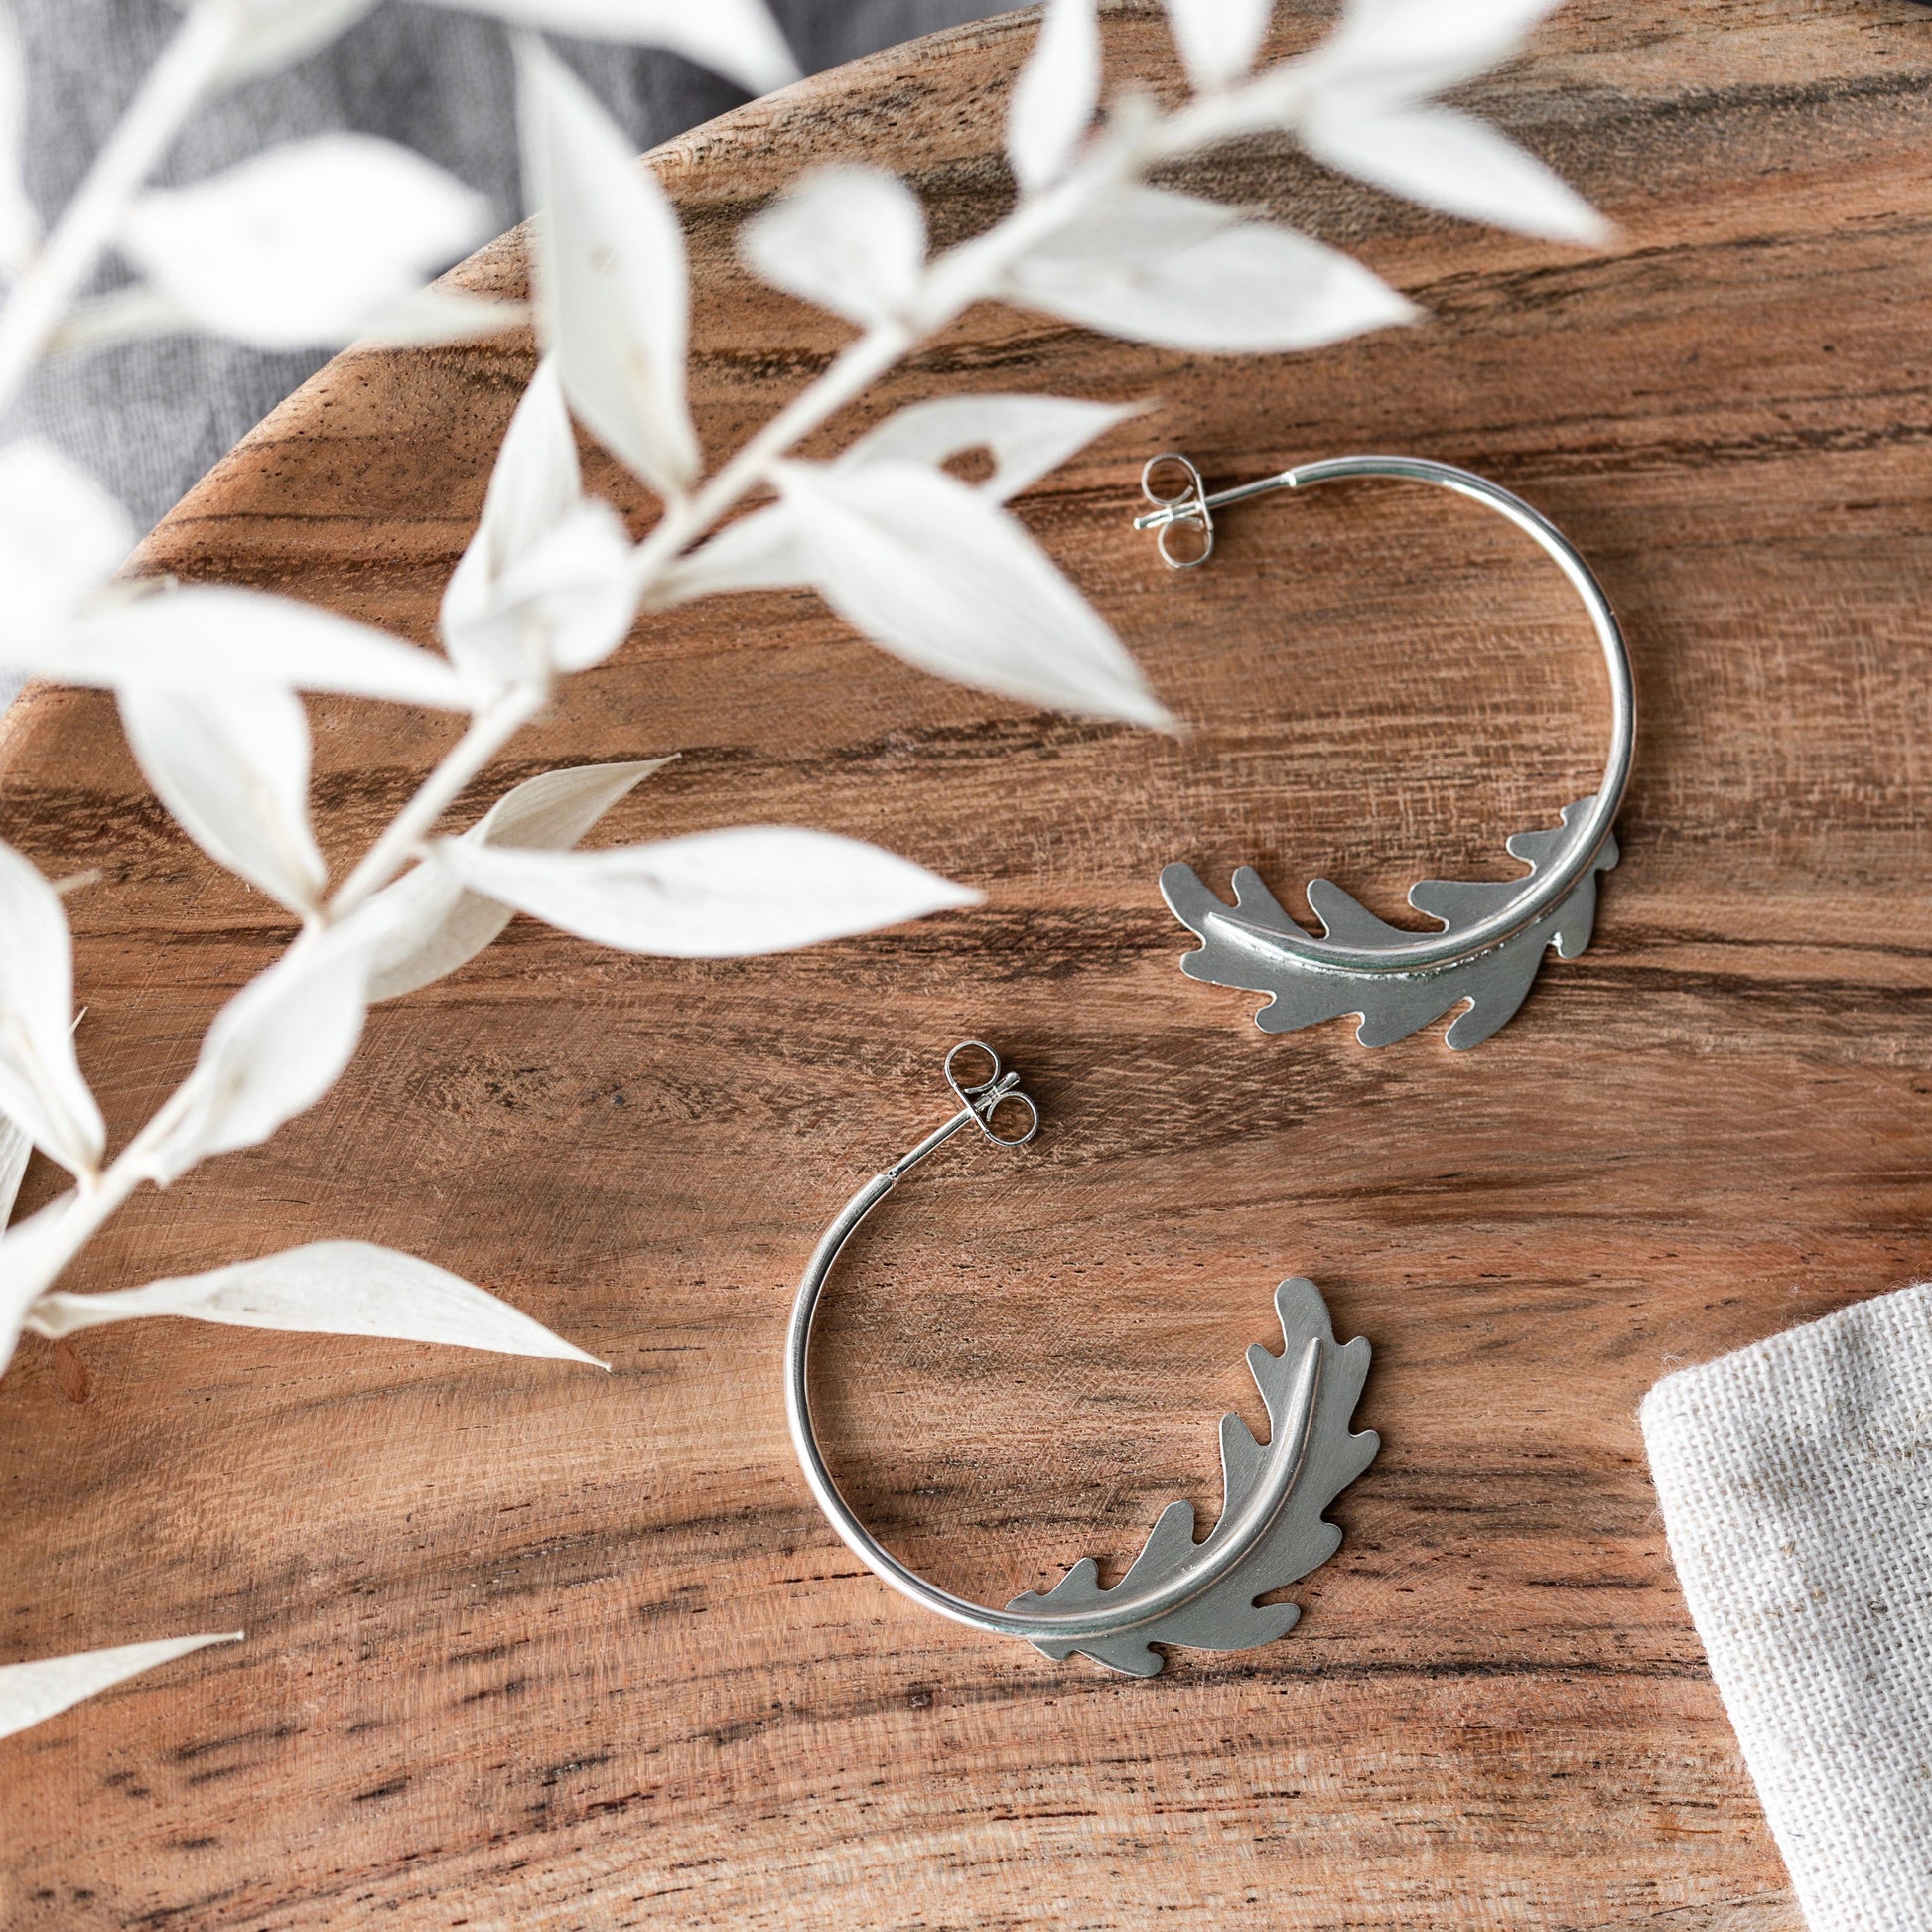 Oak Leaf Silver Hoops Earrings Handmade by Anna Calvert Jewellery in the UK